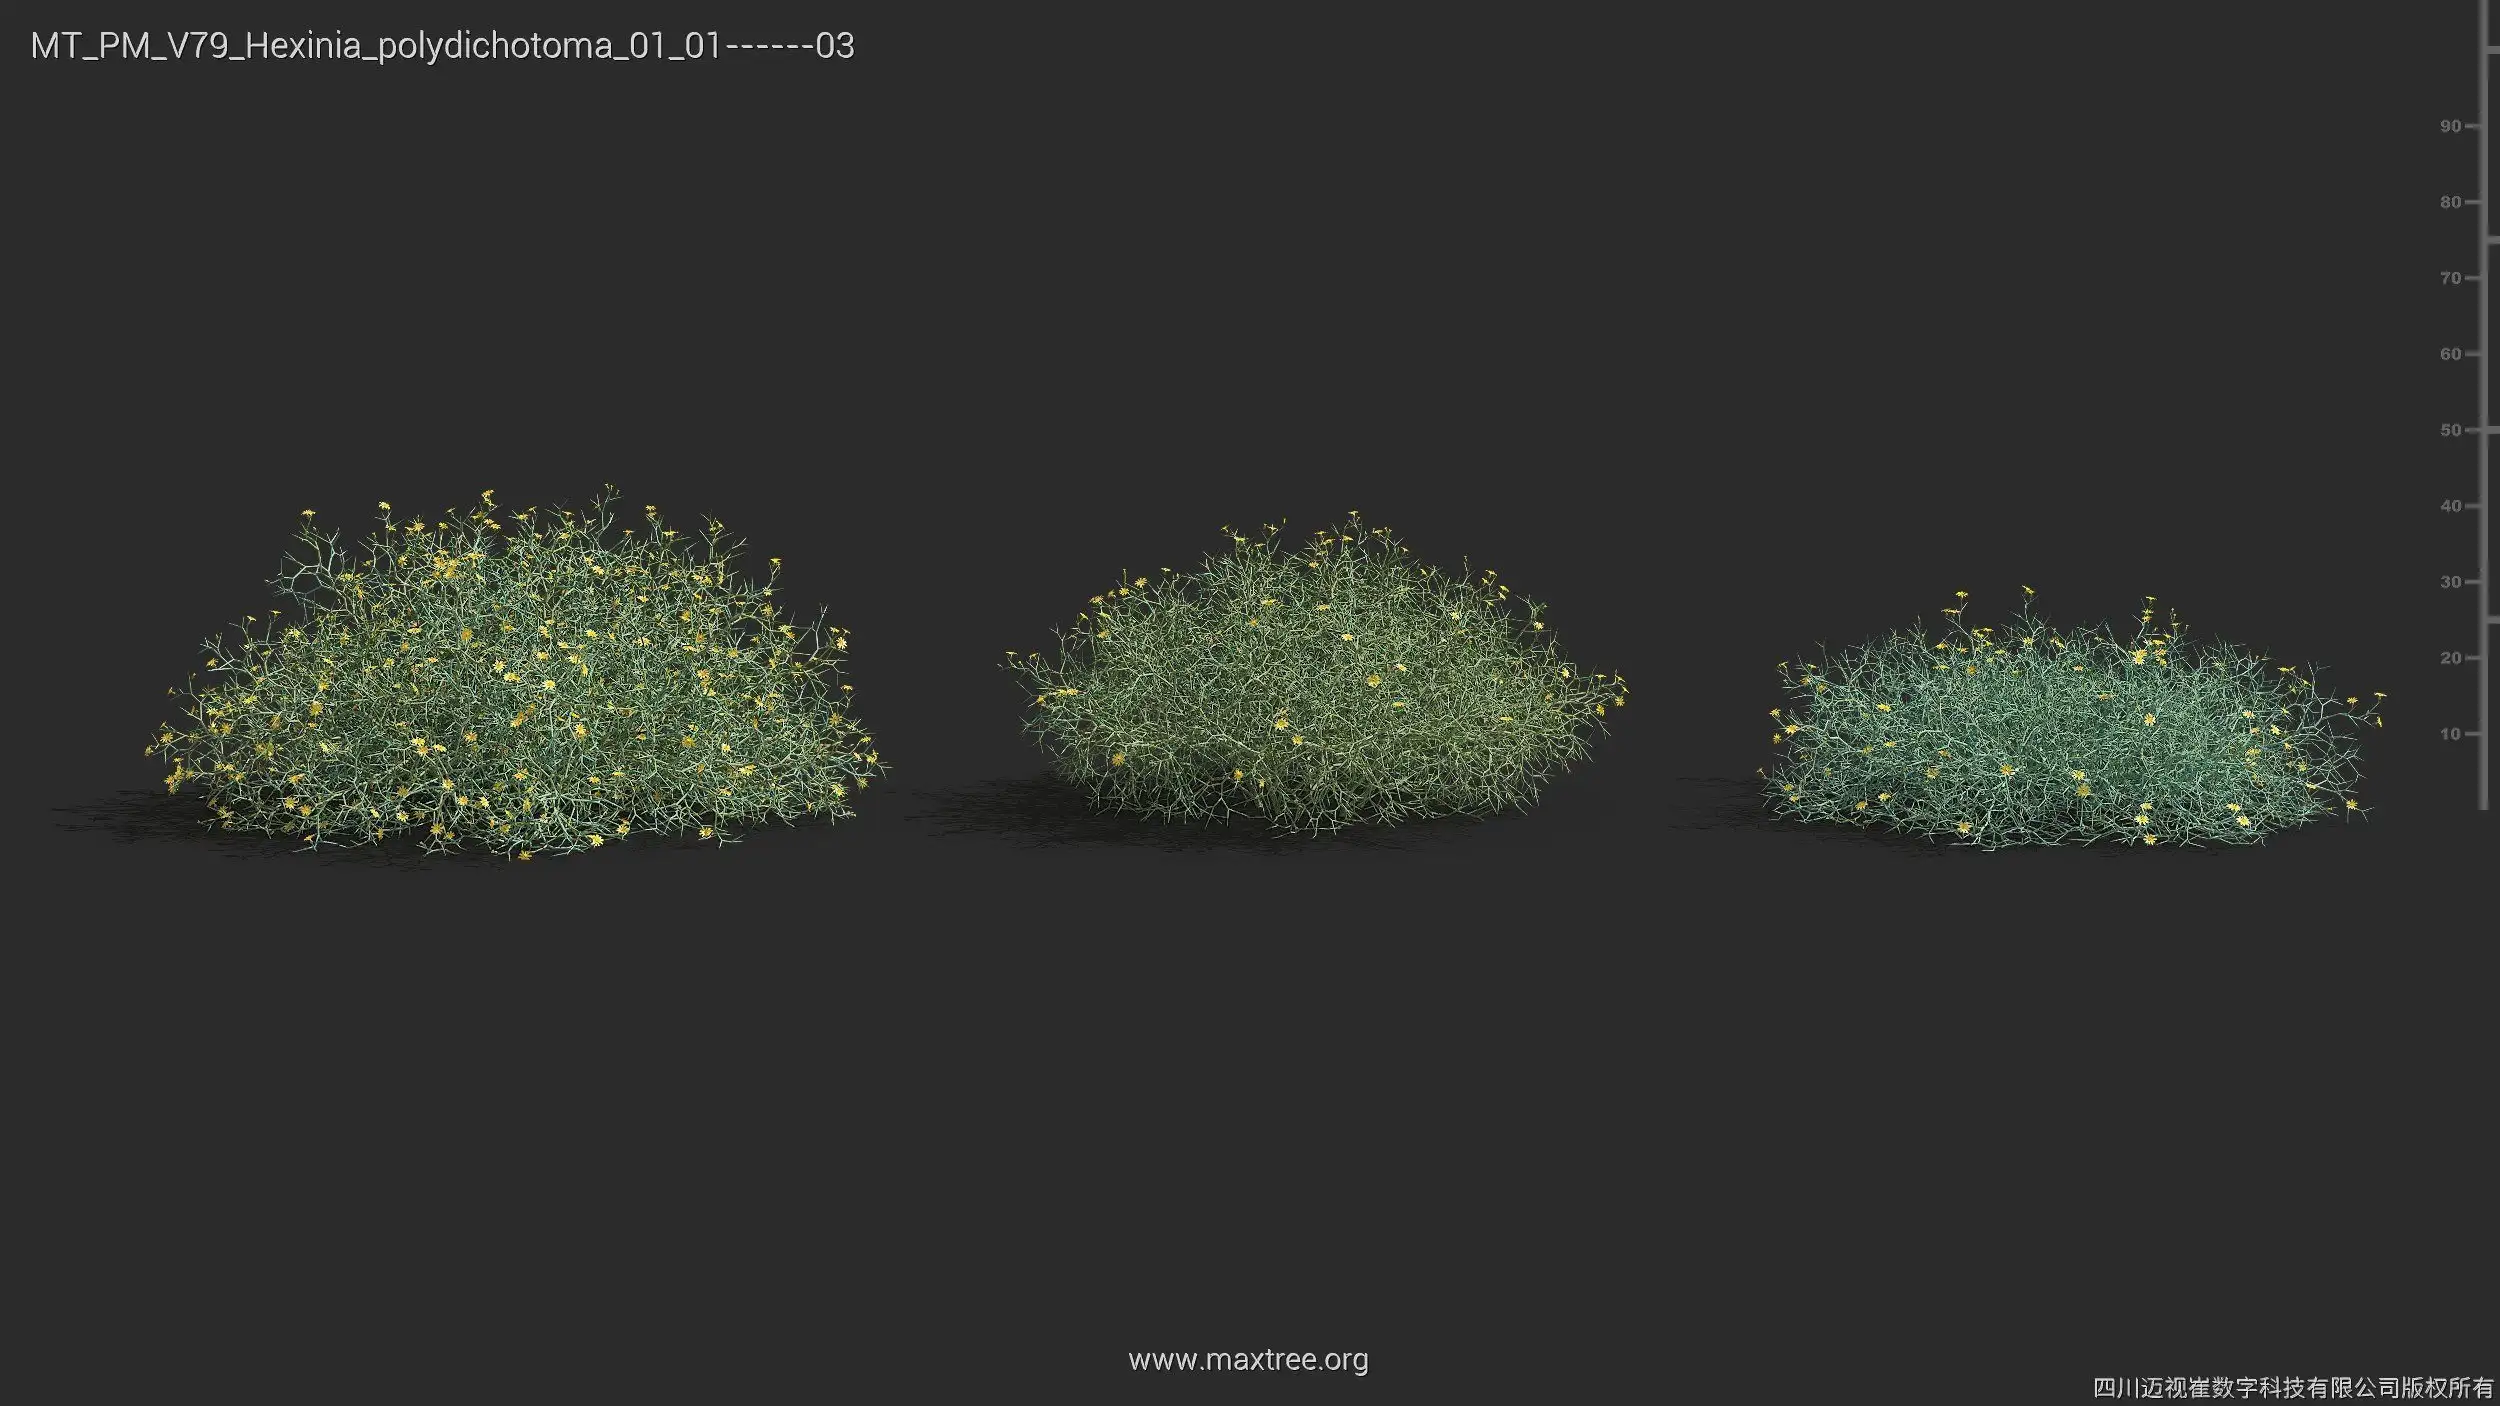 مدل سه بعدی گیاهان بیابانی - 16